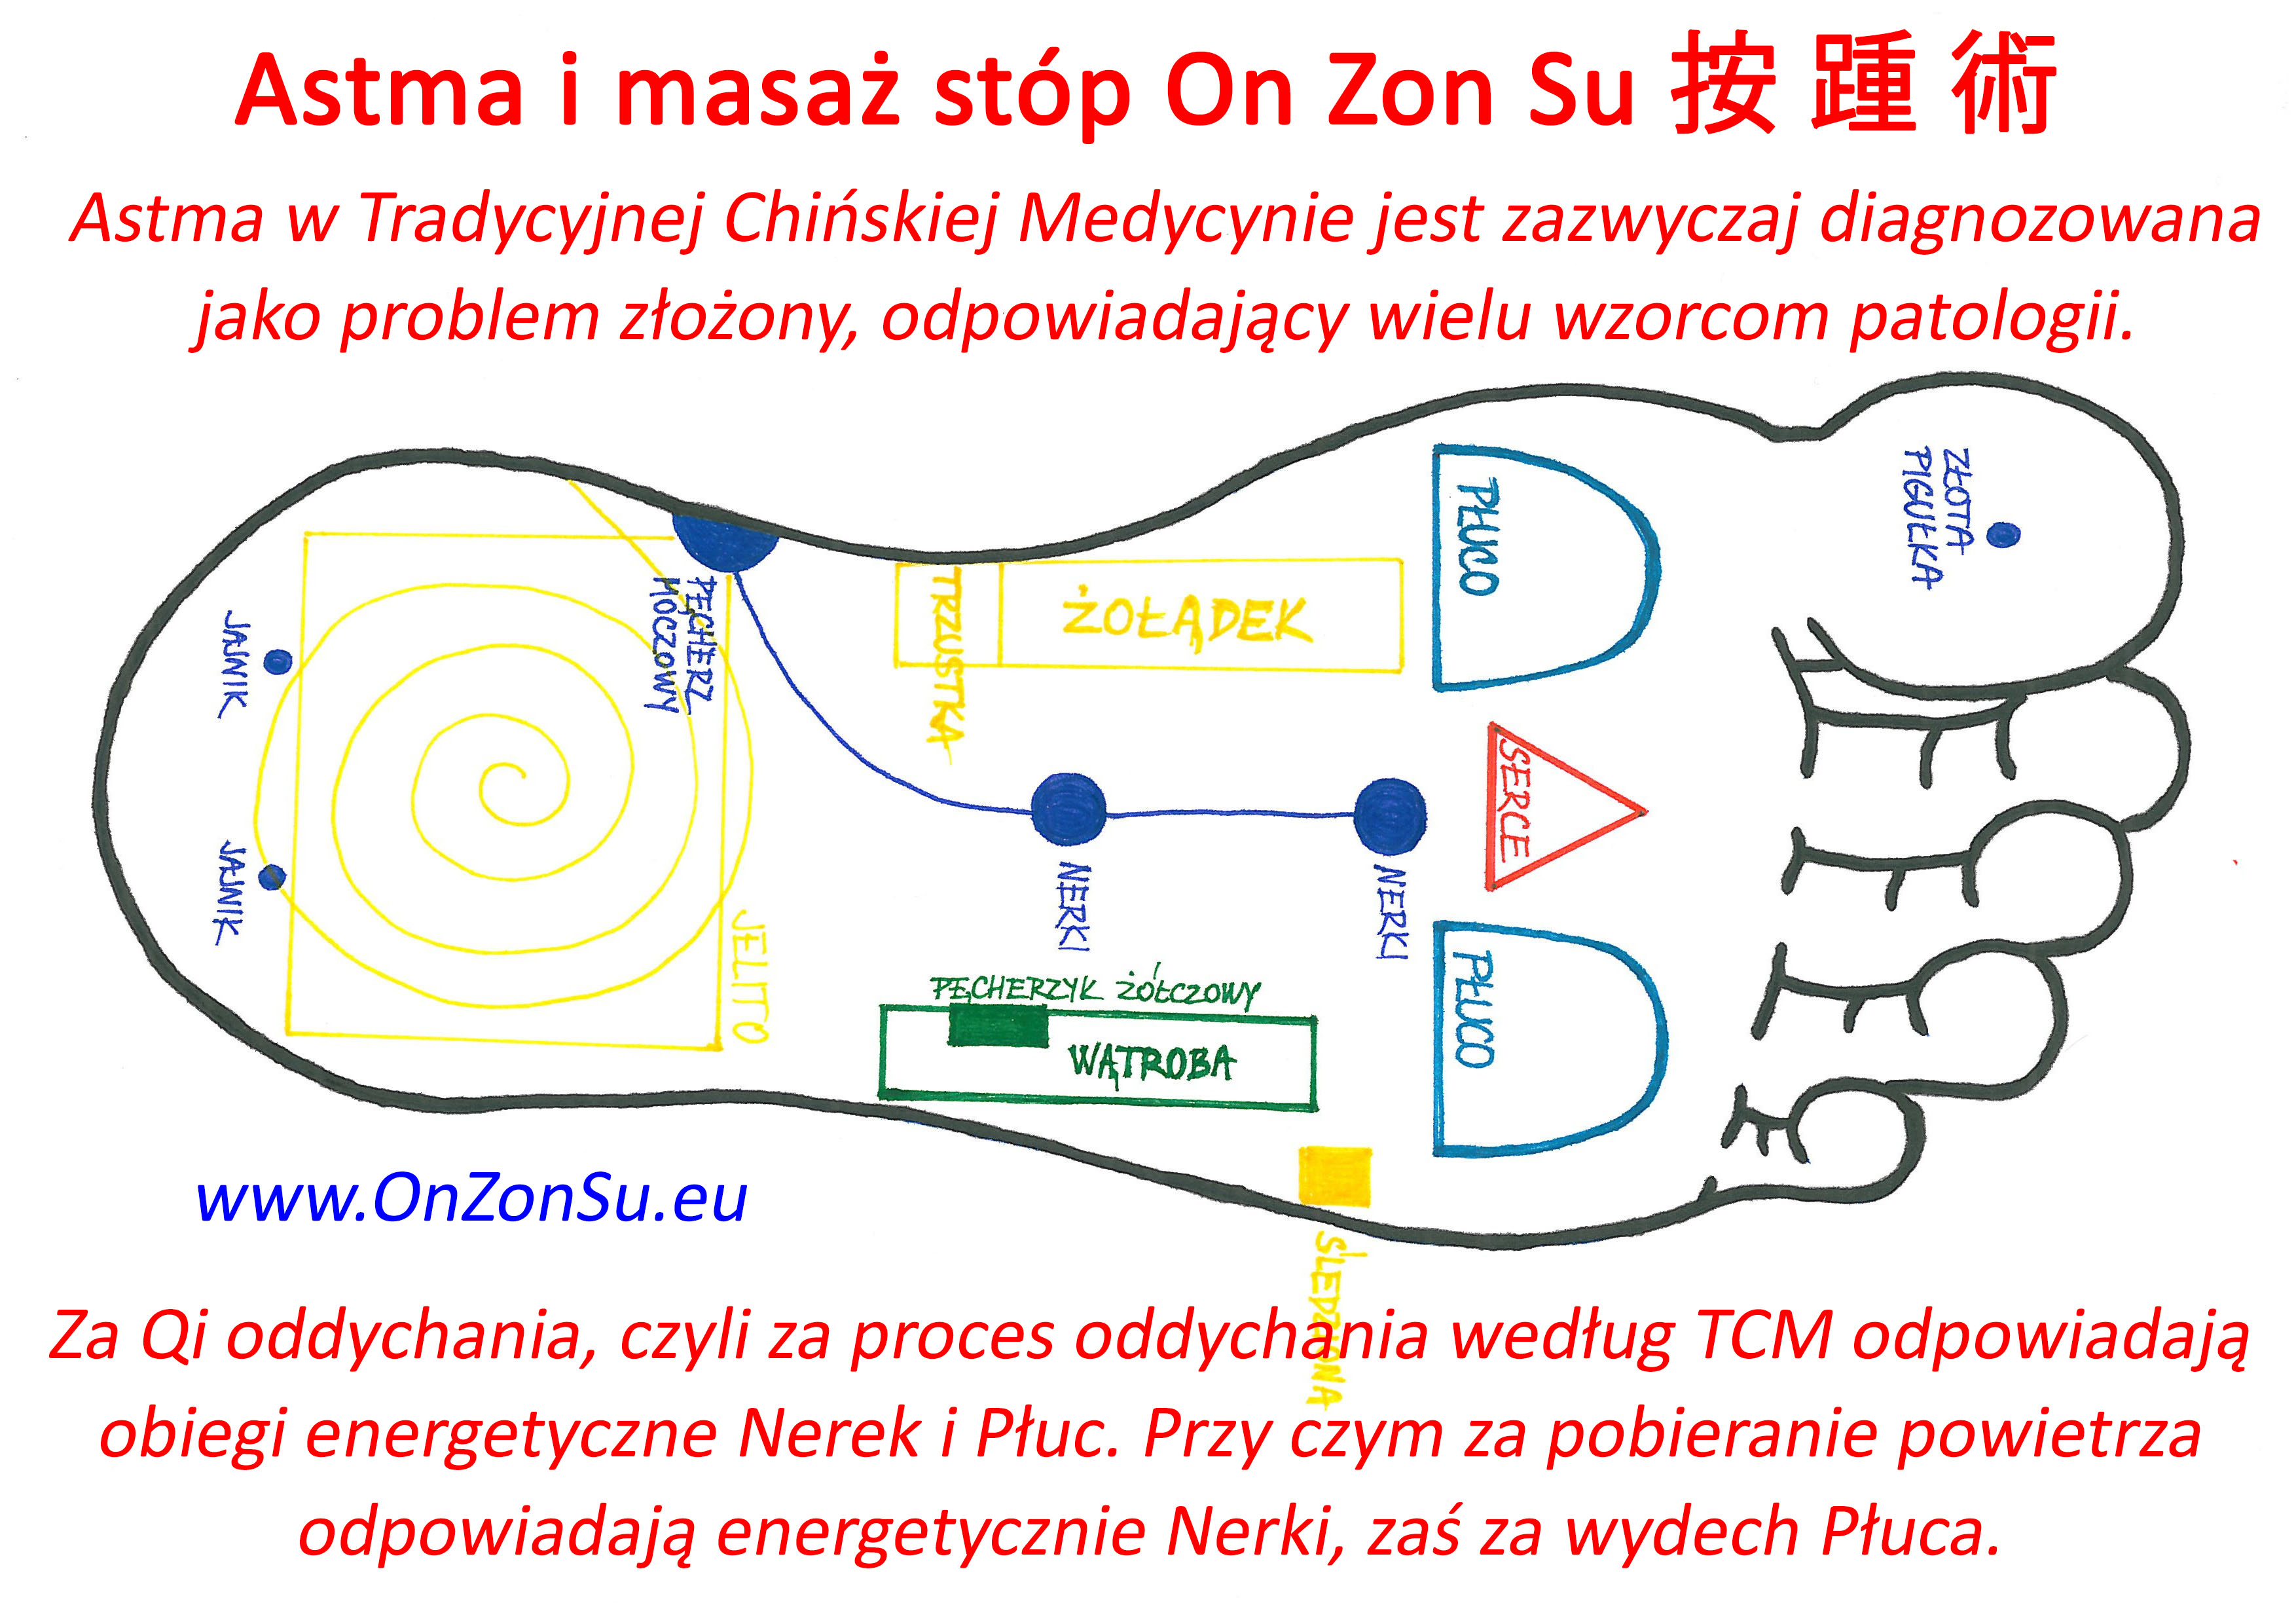 Kurs masażu stóp On Zon Su, Szkolenia refleksologii stóp - Astma Wewn-kraj_1_MEM.jpg